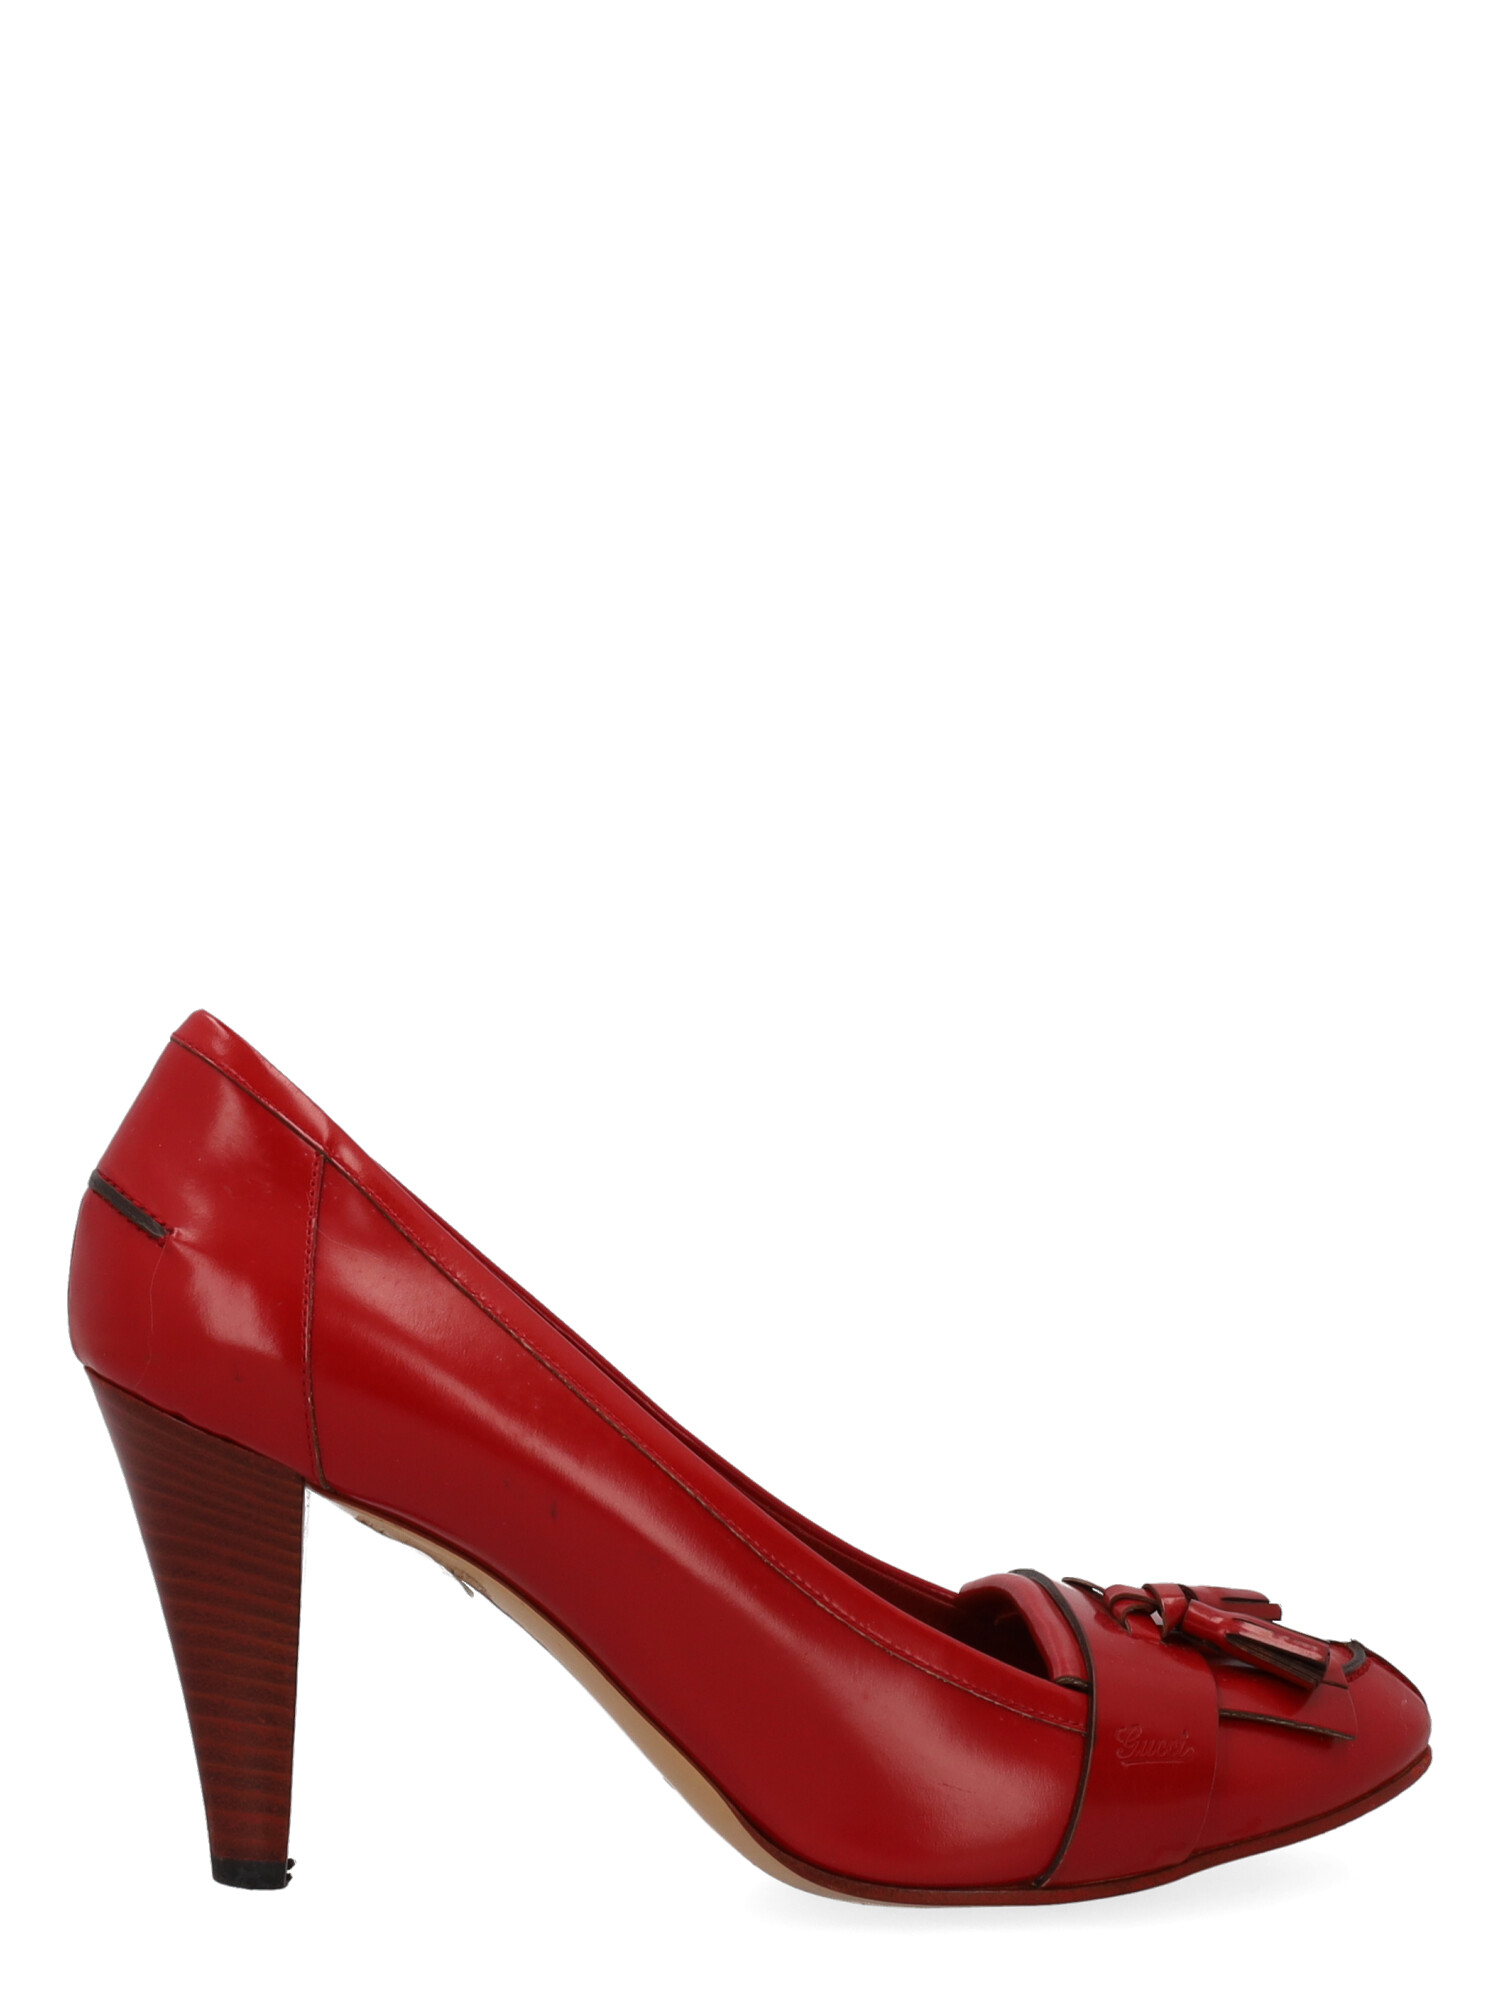 Escarpins Pour Femme - Gucci - En Leather Red - Taille: IT 40 - EU 40